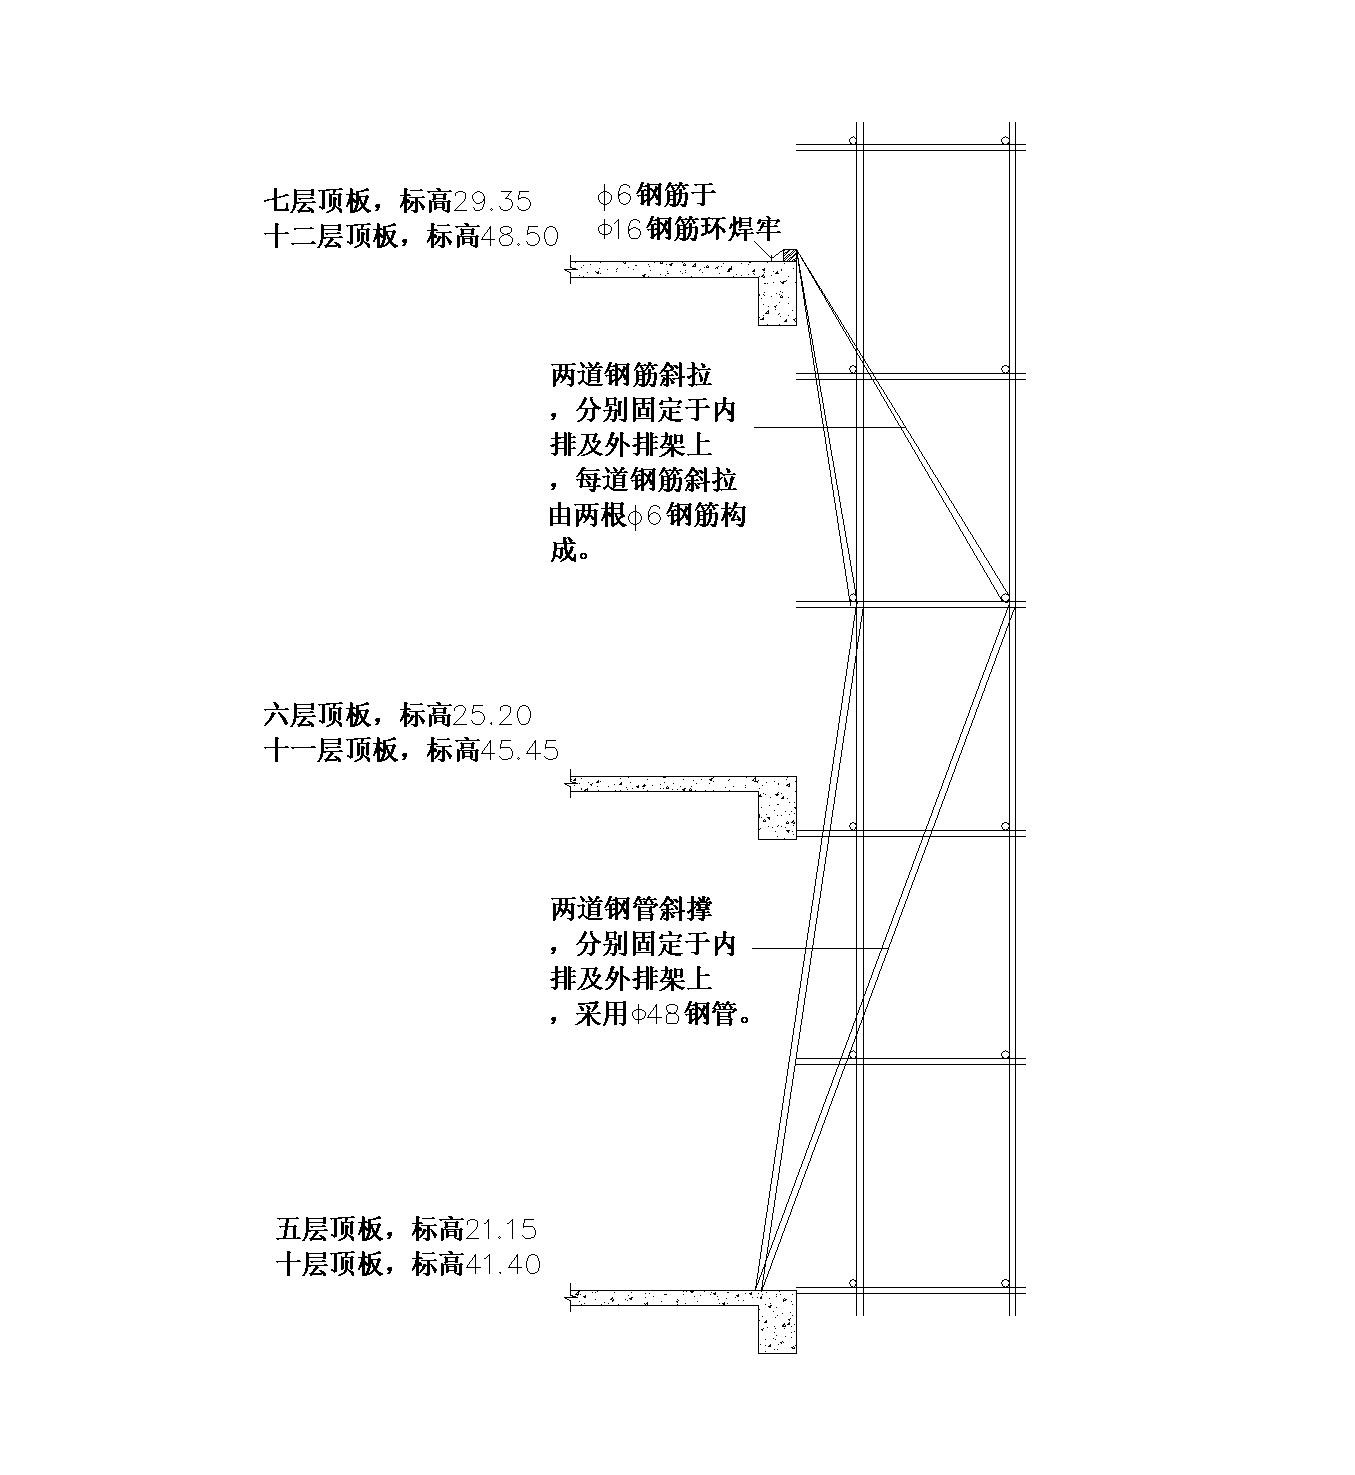 北京某通信枢纽楼脚手架搭设平面位置示意图